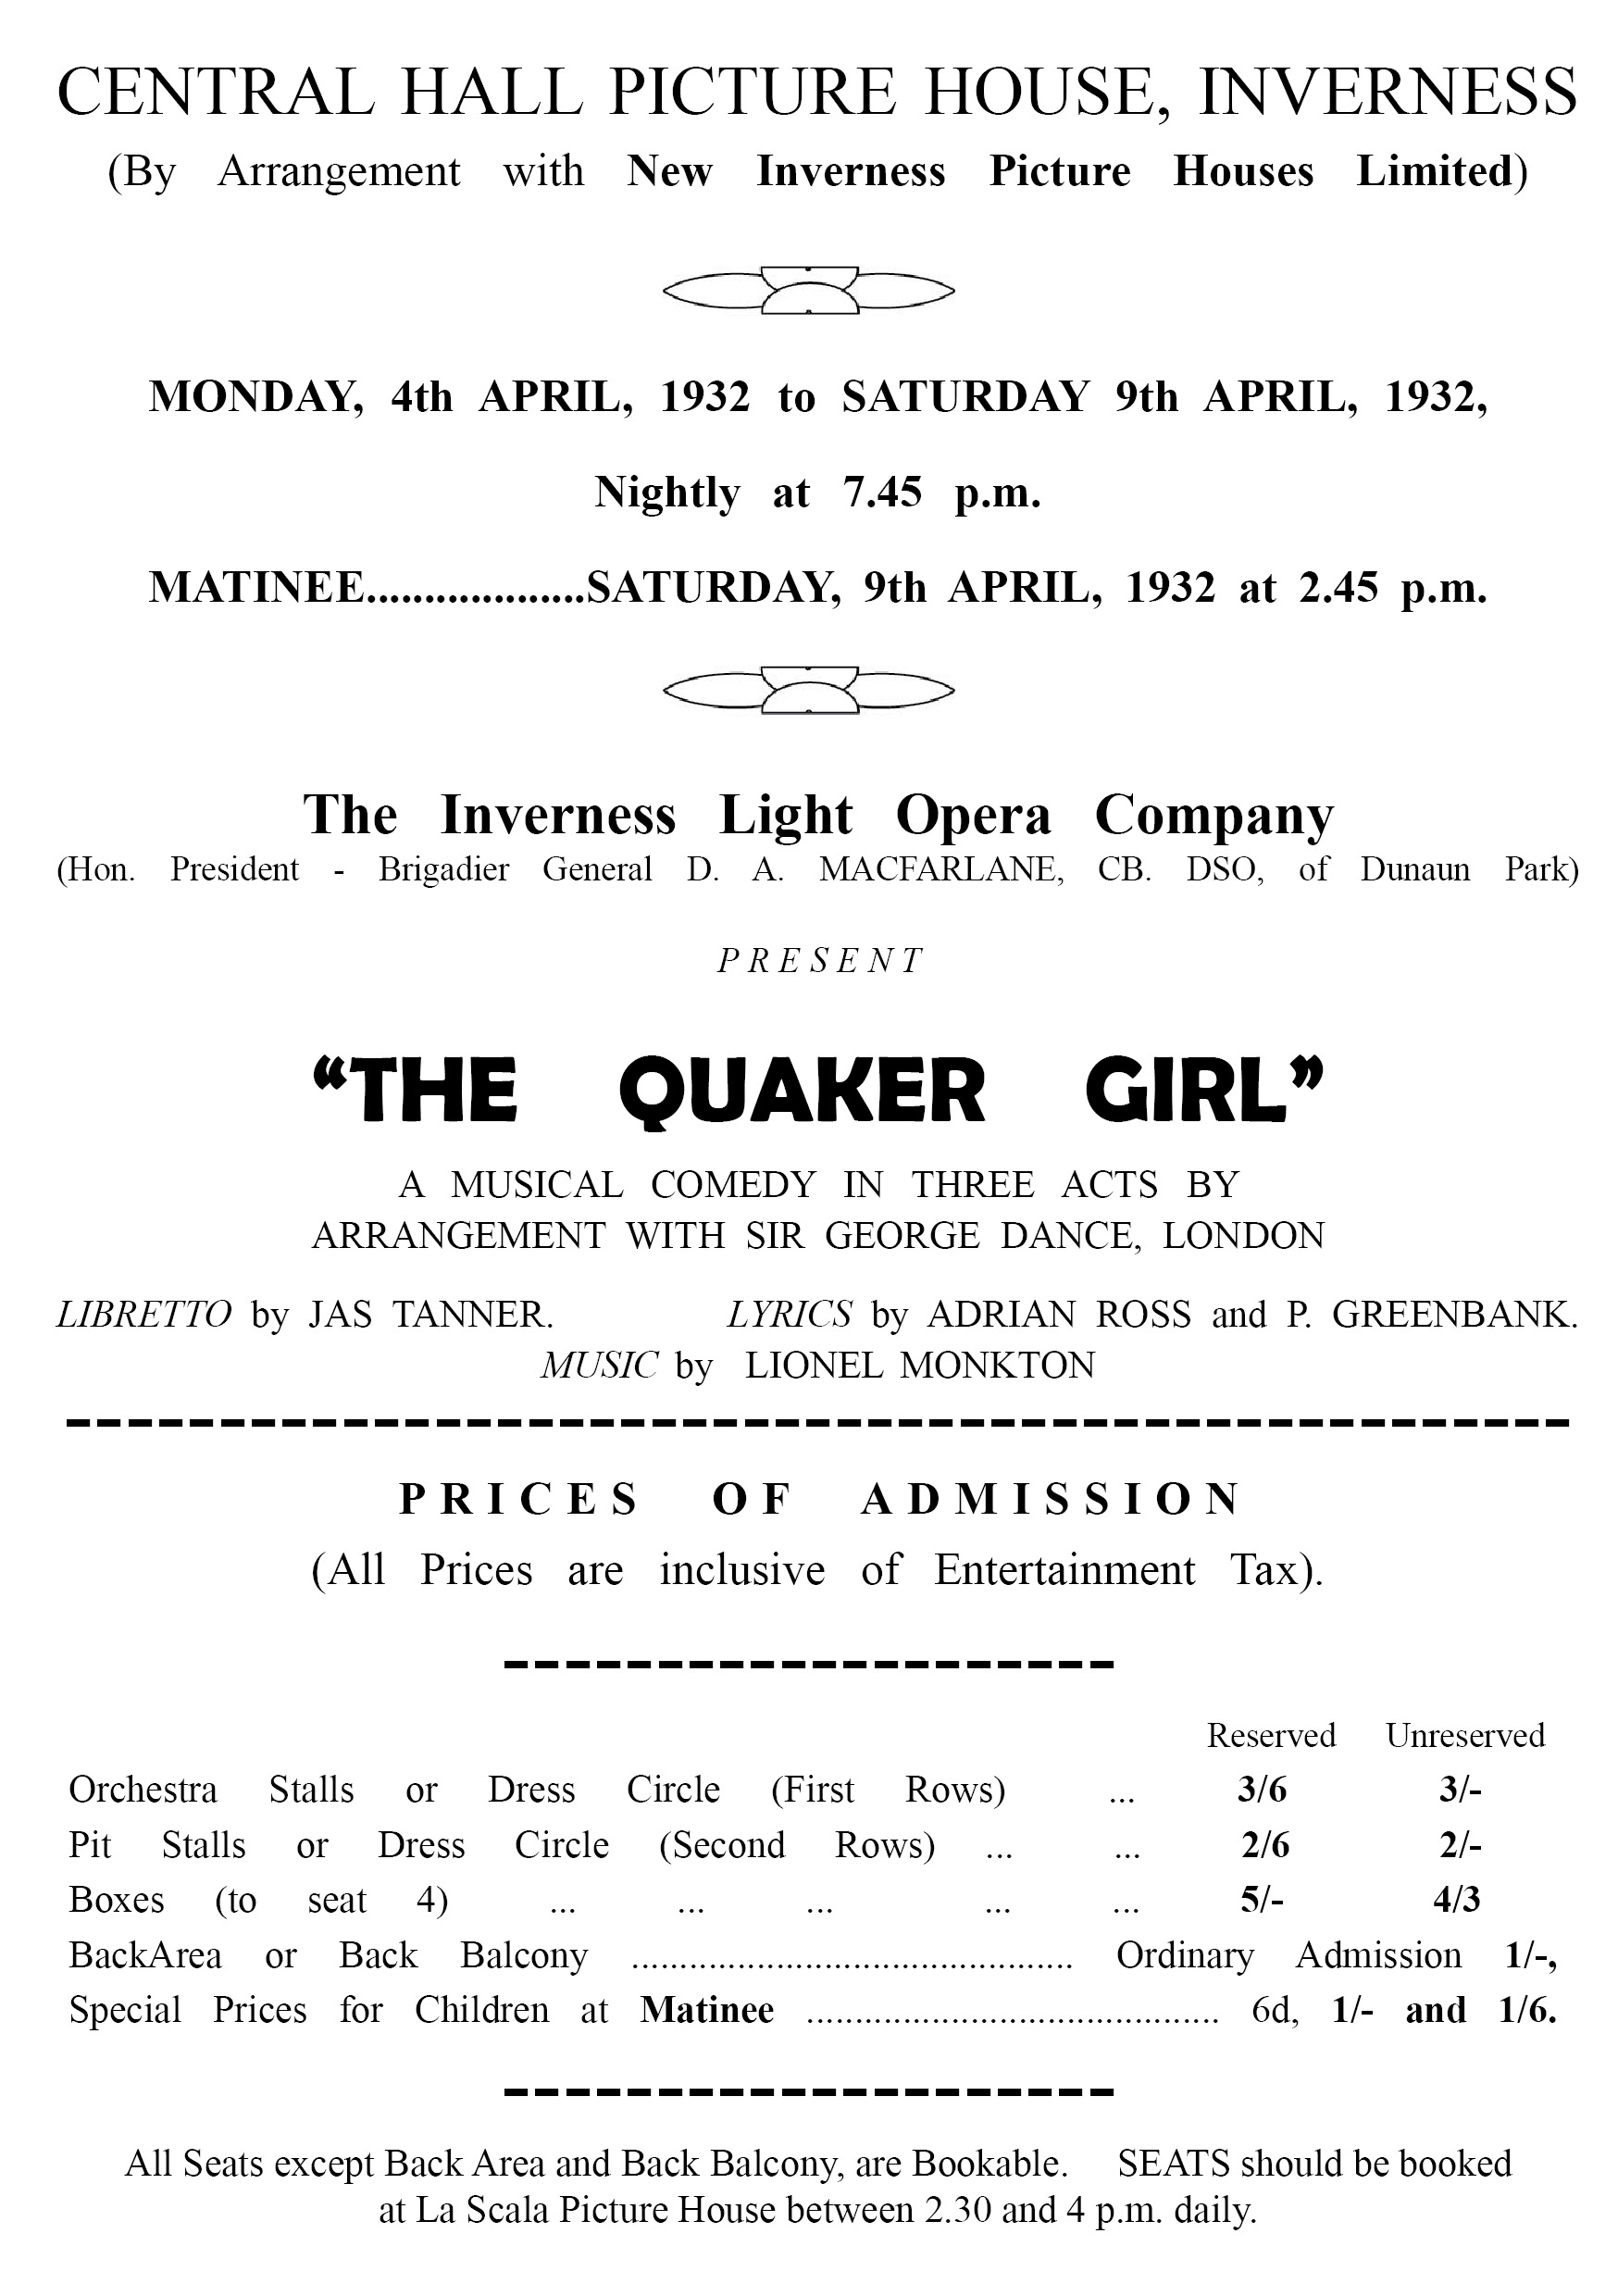 The Quaker Girl : 1932